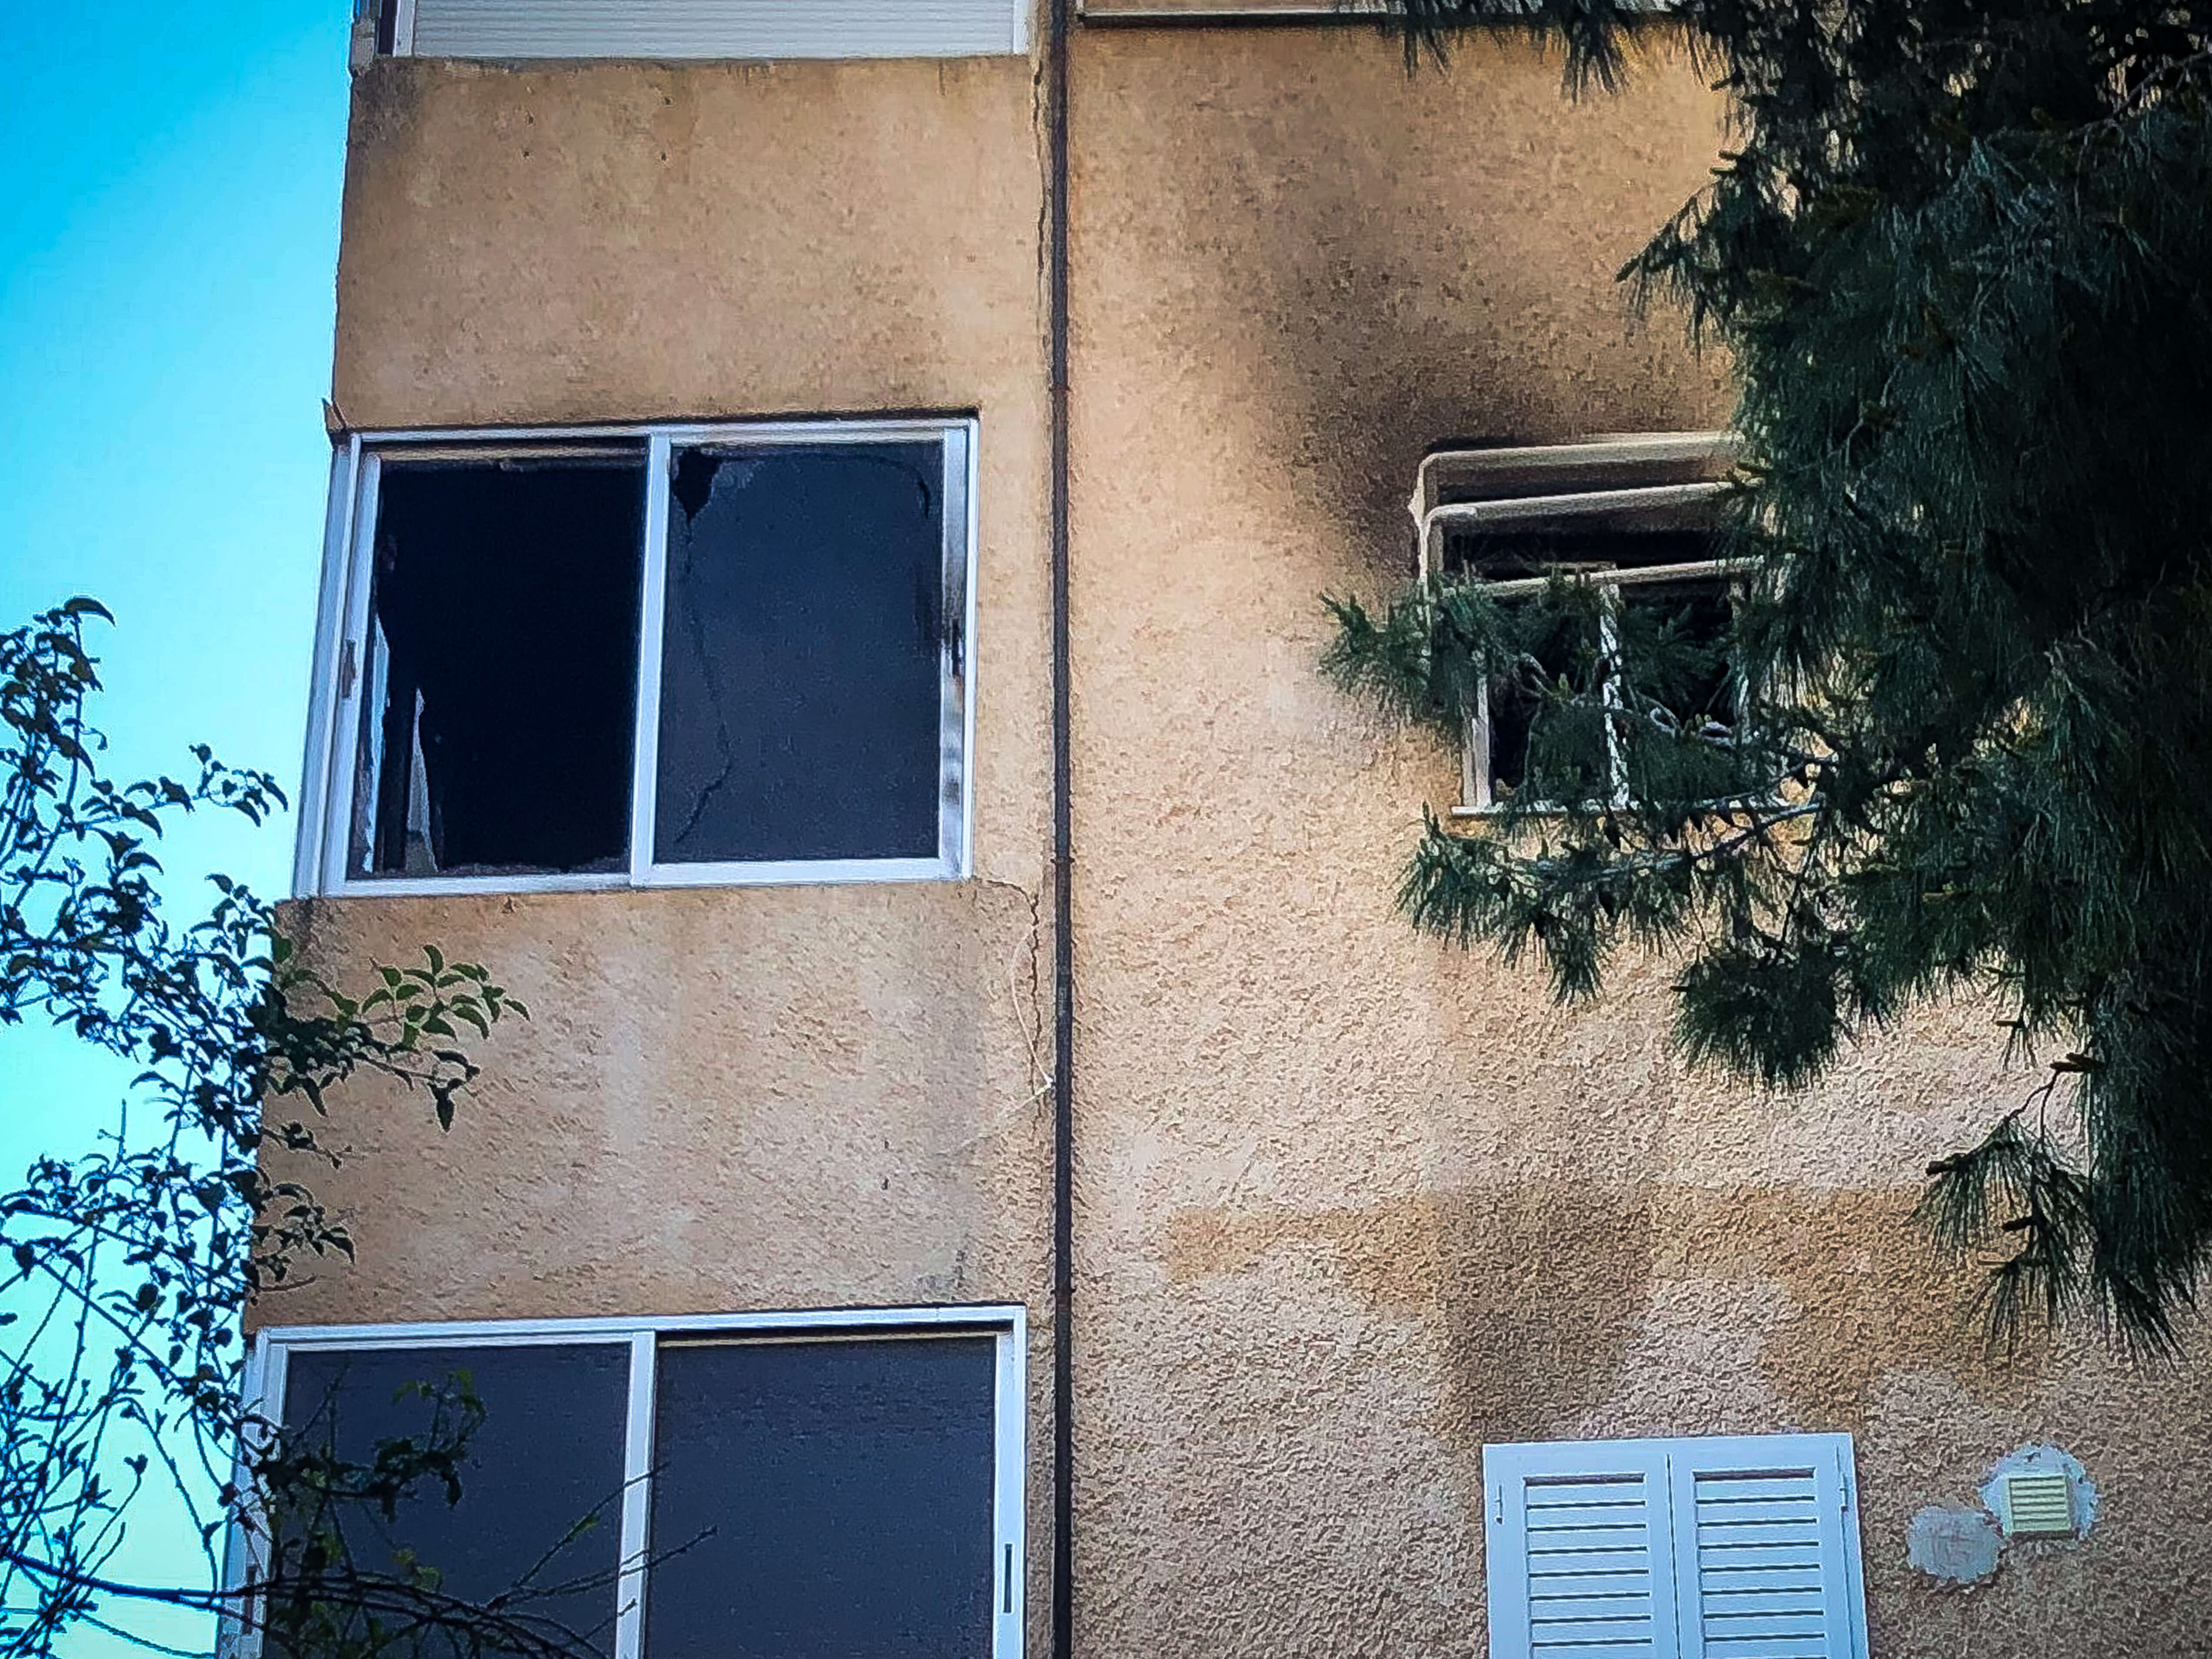 Τραγωδία στη Βάρκιζα – Νεκρό βρέφος μετά από φωτιά σε διαμέρισμα